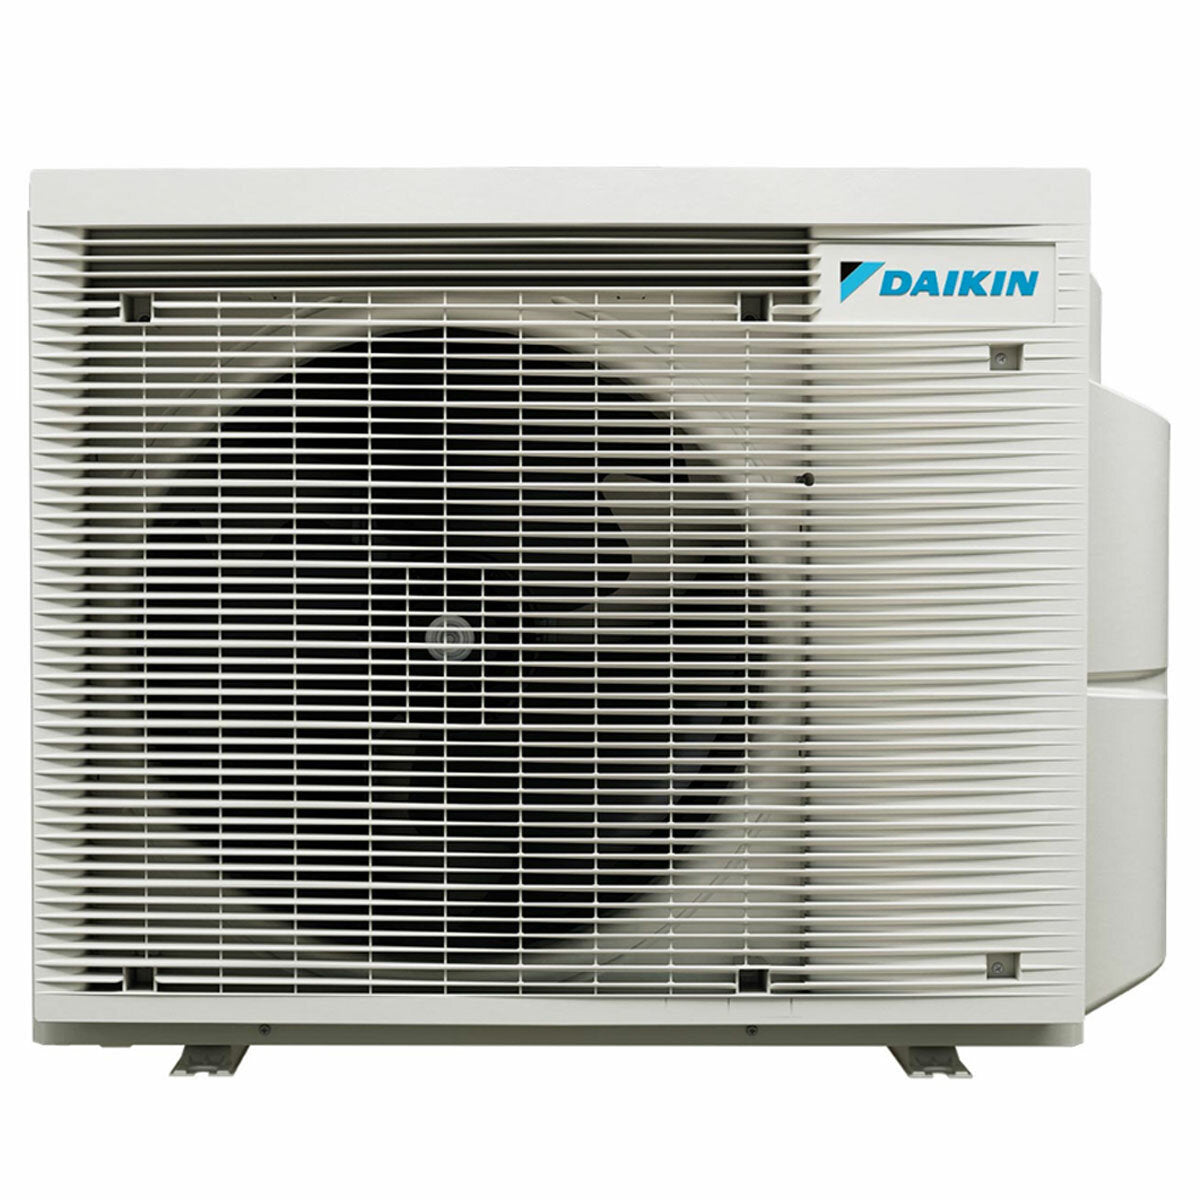 Daikin Stylish White Trial Split-Klimaanlage 9000+12000+12000 BTU Inverter A++ WLAN-Außeneinheit 6,8 kW